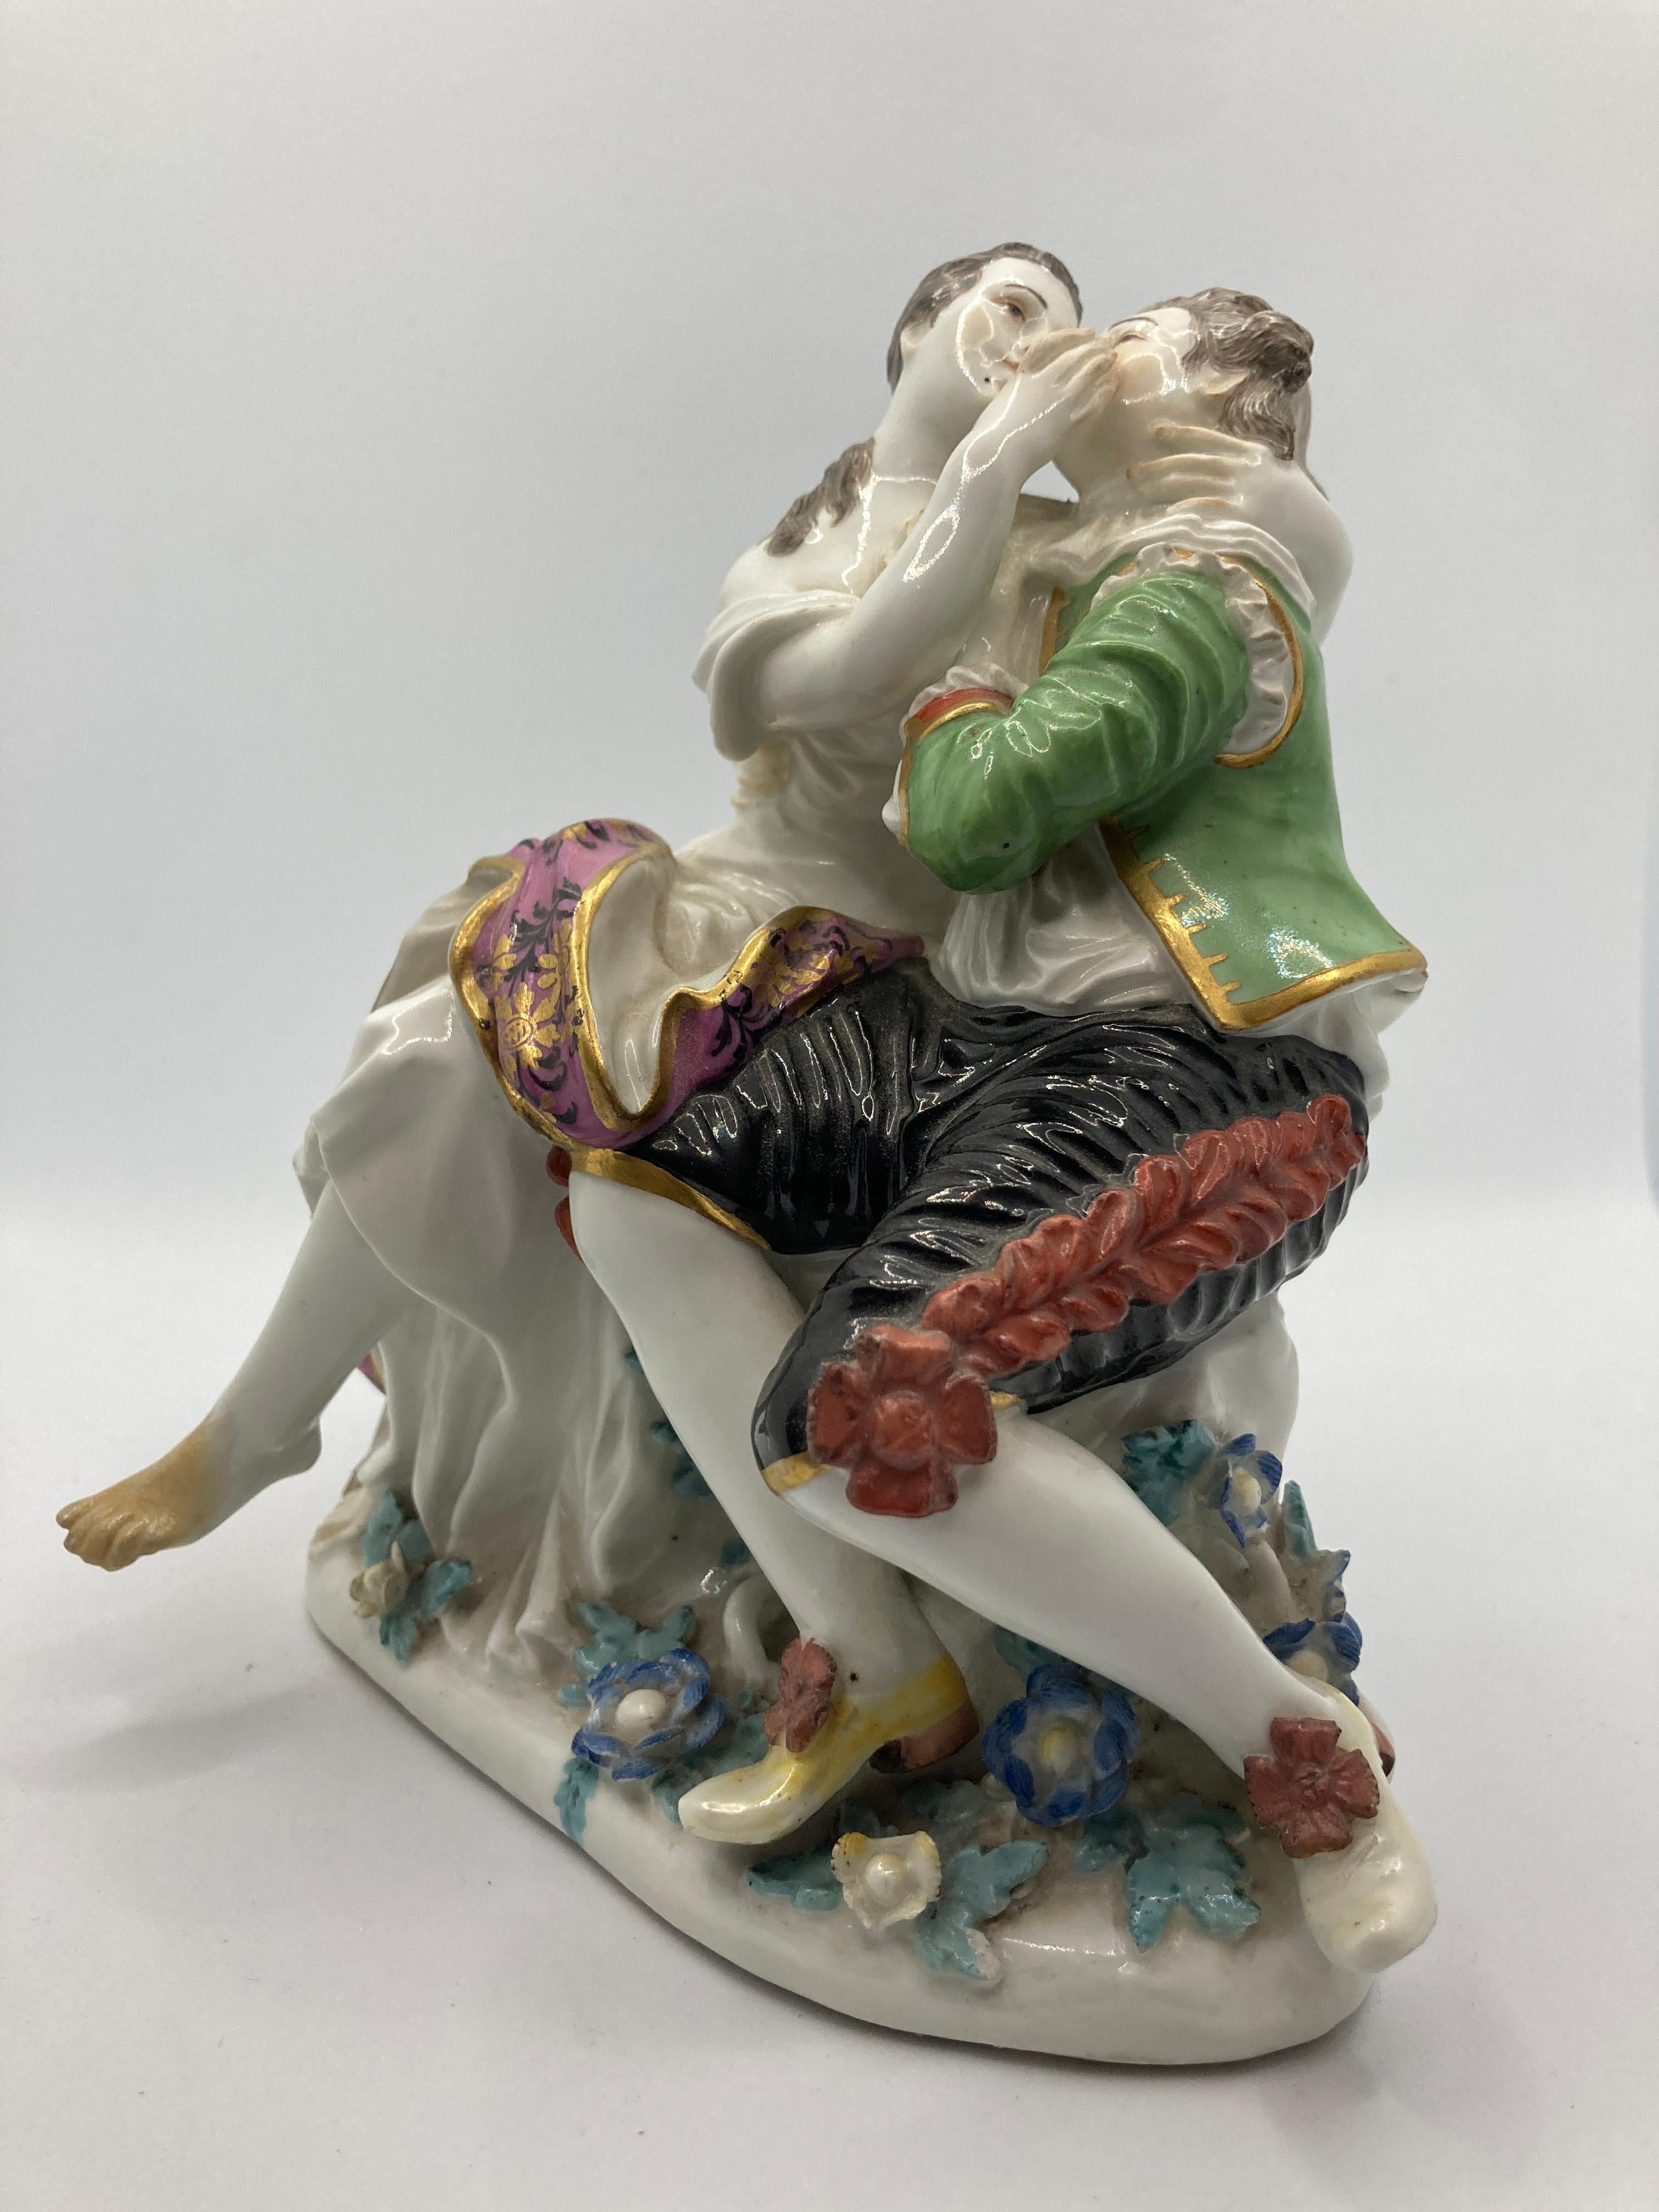 Figurines en porcelaine de Meissen du XVIIIe siècle, paire d'amoureux. Modèle 571. 

Amoureux assis, conçu par Johann Joachim Kaendler, au-dessus d'un socle recouvert de fleurs et de feuilles en plastique, couple de bergers assis sur une souche